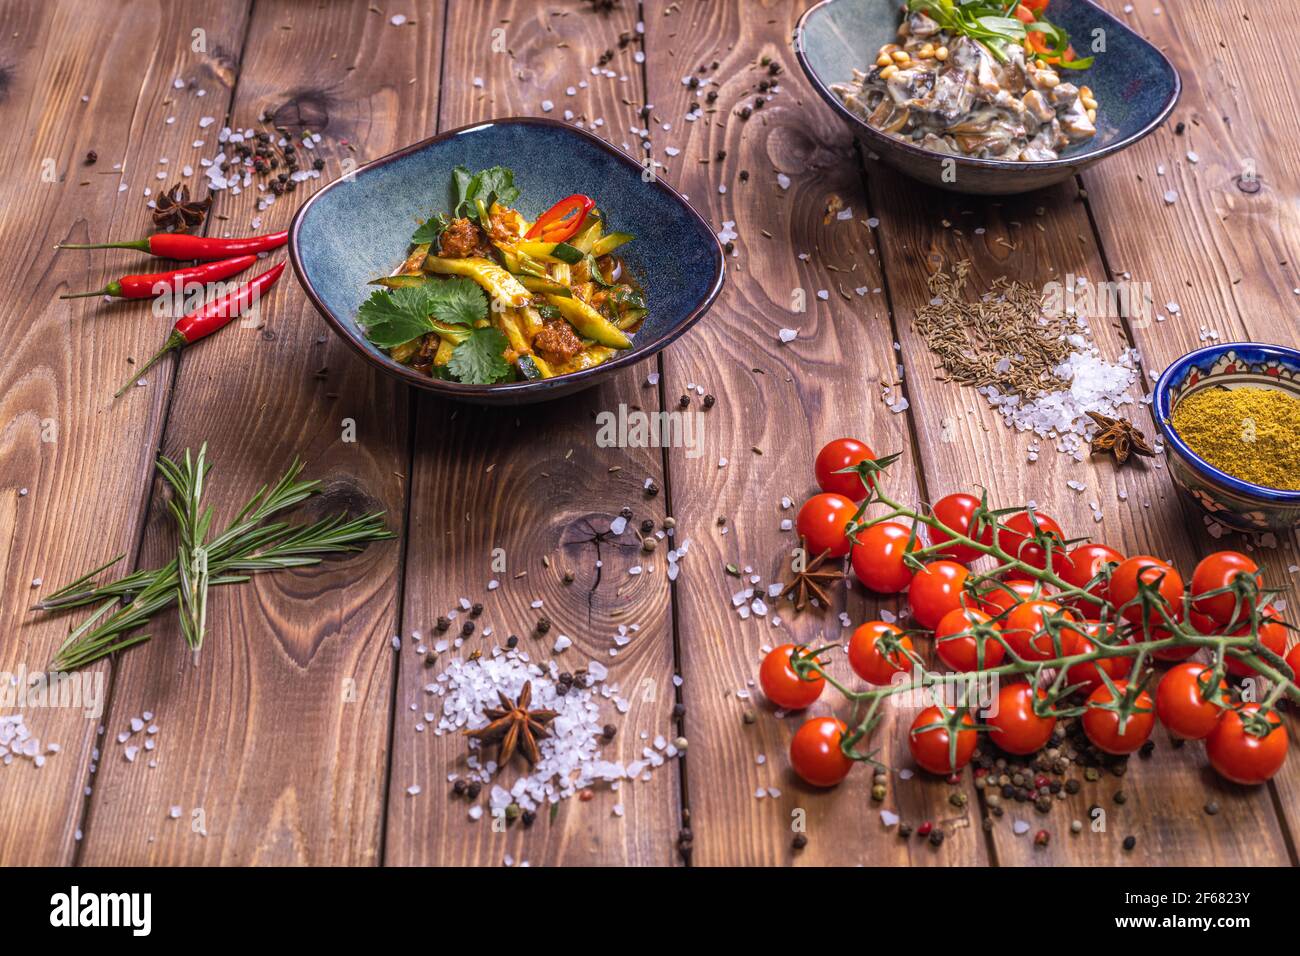 Salades de légumes dans des assiettes, tomates cerises, cannelle, romarin sur fond de bois brun. Le concept de service de restaurant. Banque D'Images